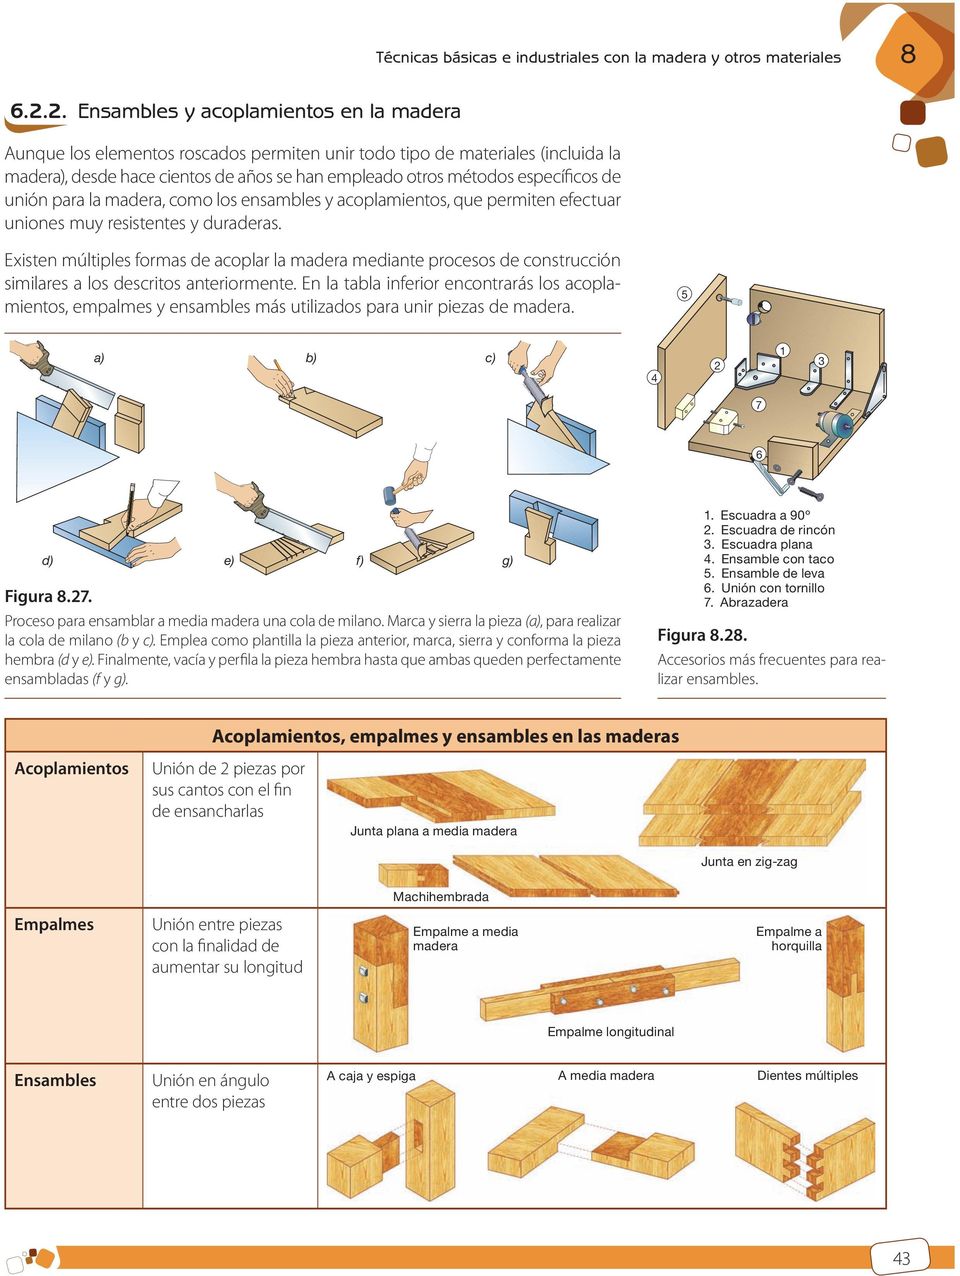 específicos de unión para la madera, como los ensambles y acoplamientos, que permiten efectuar uniones muy resistentes y duraderas.